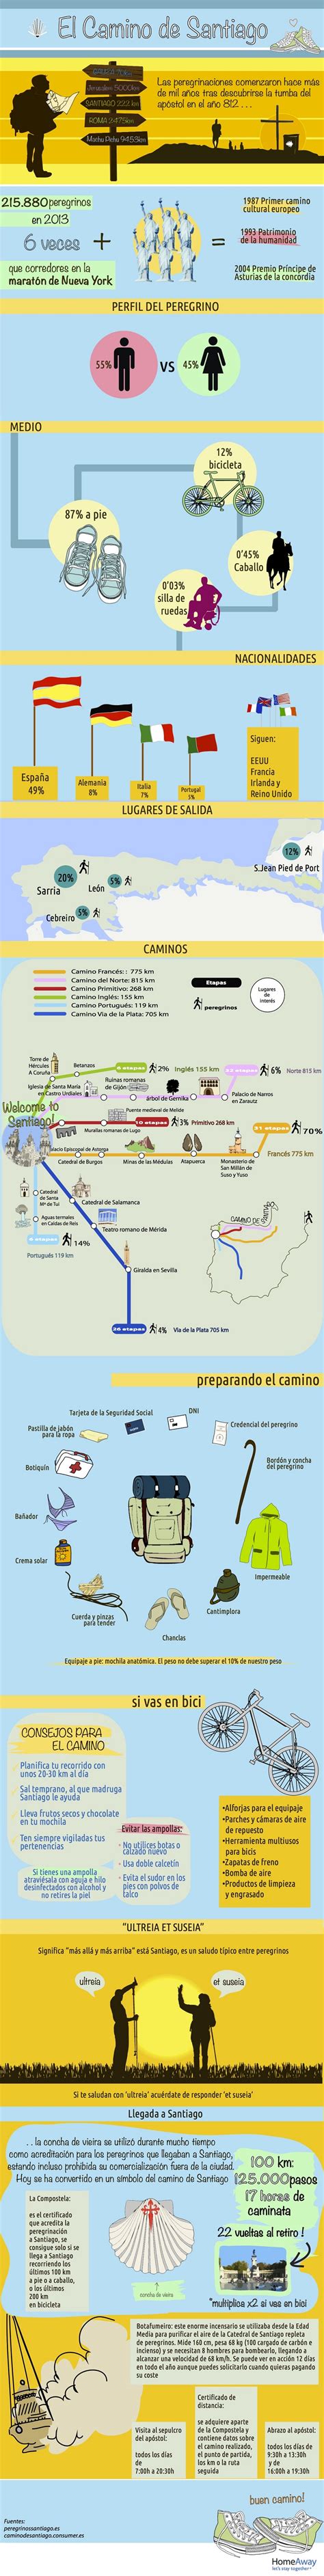 Camino de Santiago: Etapas y Rutas del peregrino